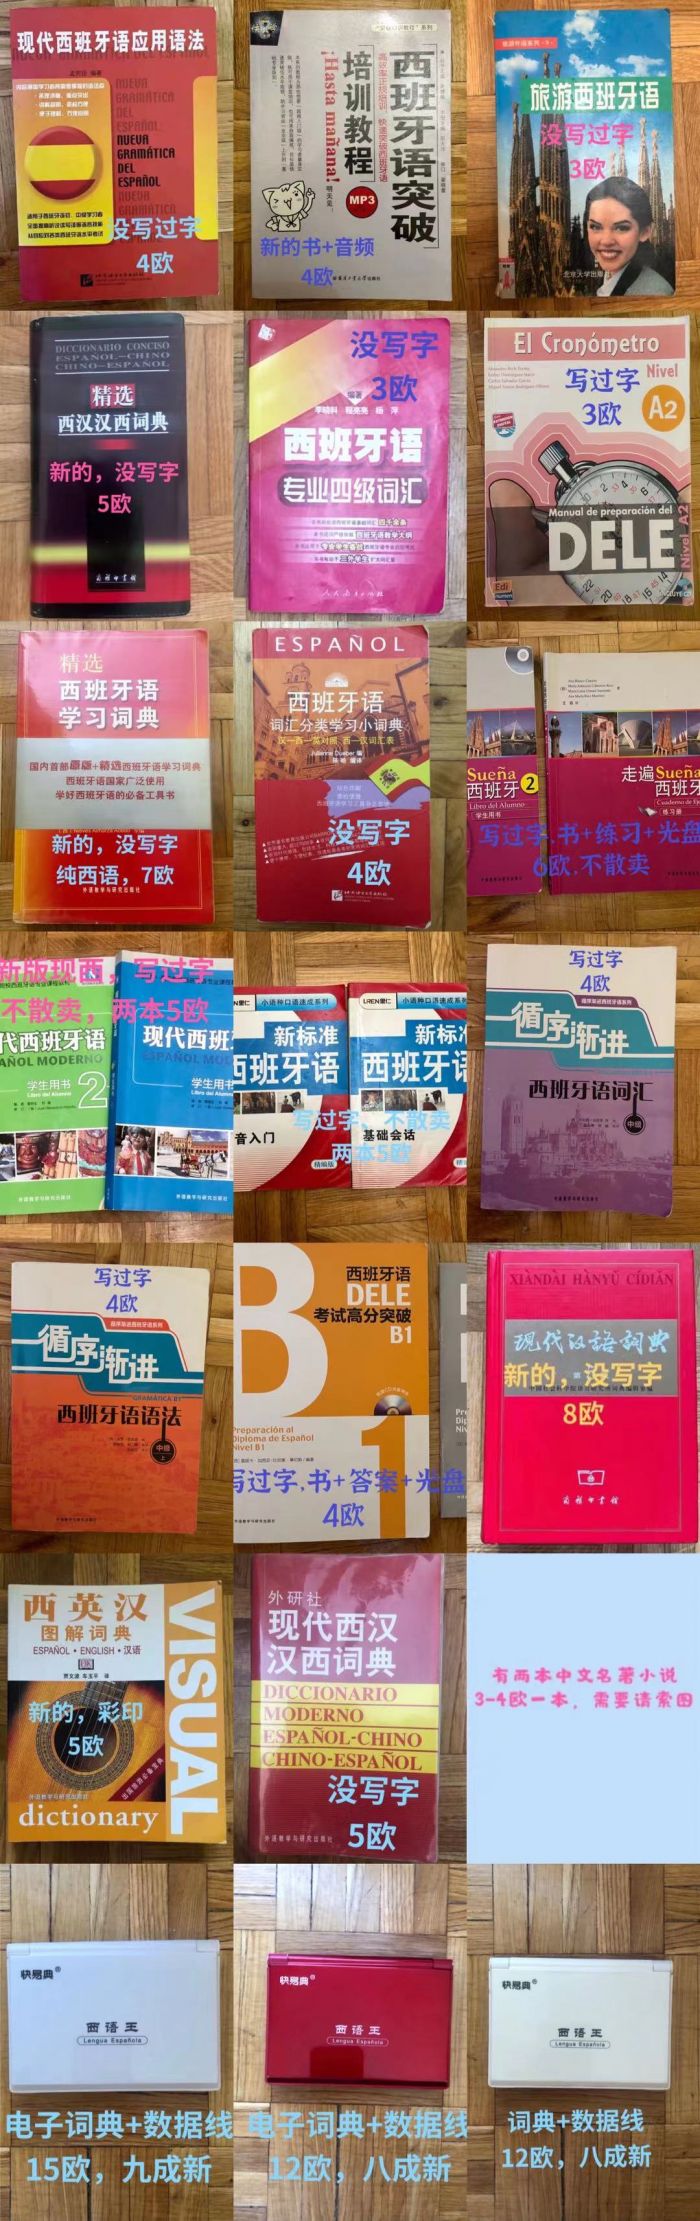 学习西语的书、词典、电子词典、中文小说